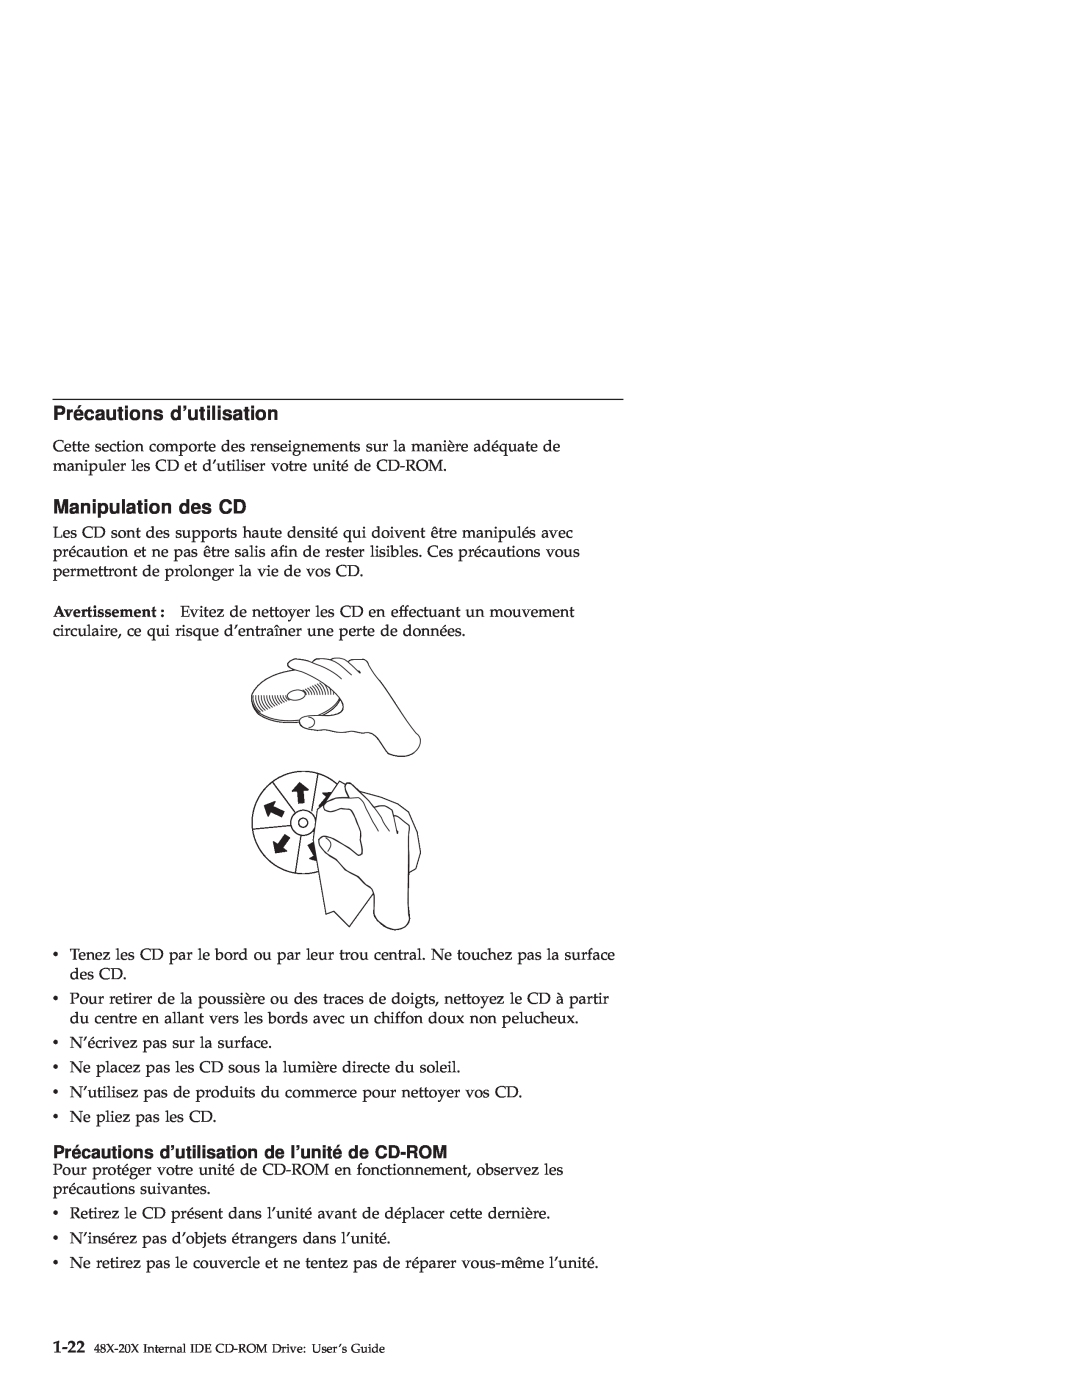 IBM 71P7279 manual Manipulation des CD, Précautions dutilisation de lunité de CD-ROM 